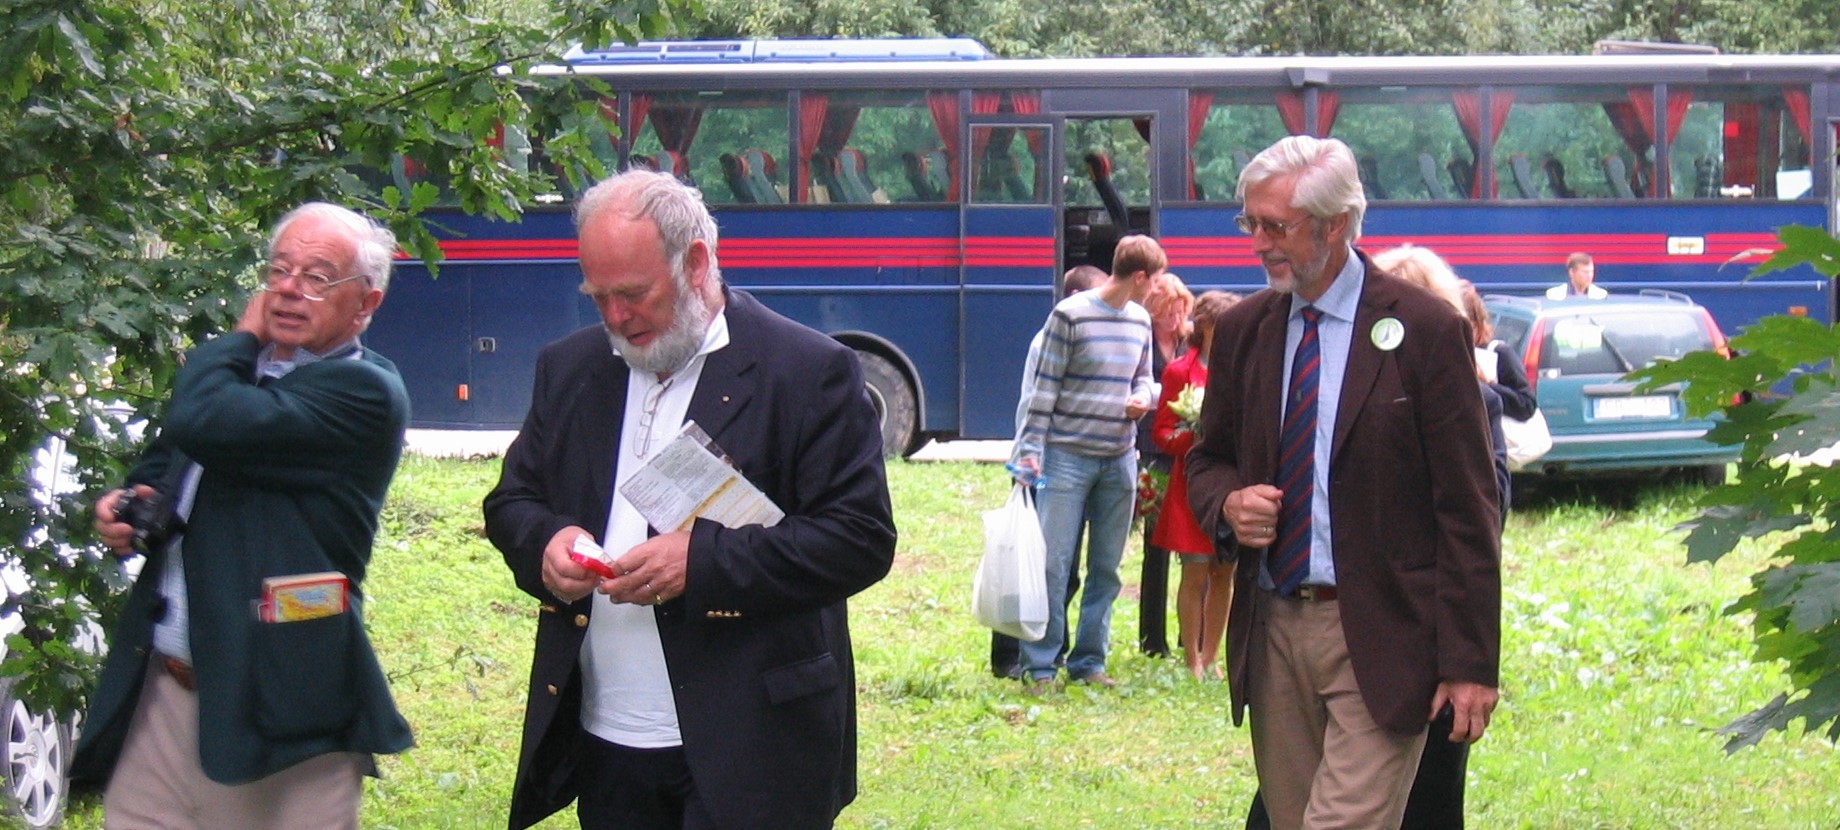 Tre äldre män går över en gräsmatta. I bakgrunden syns en buss och flera människor som står bakom de tre männen.